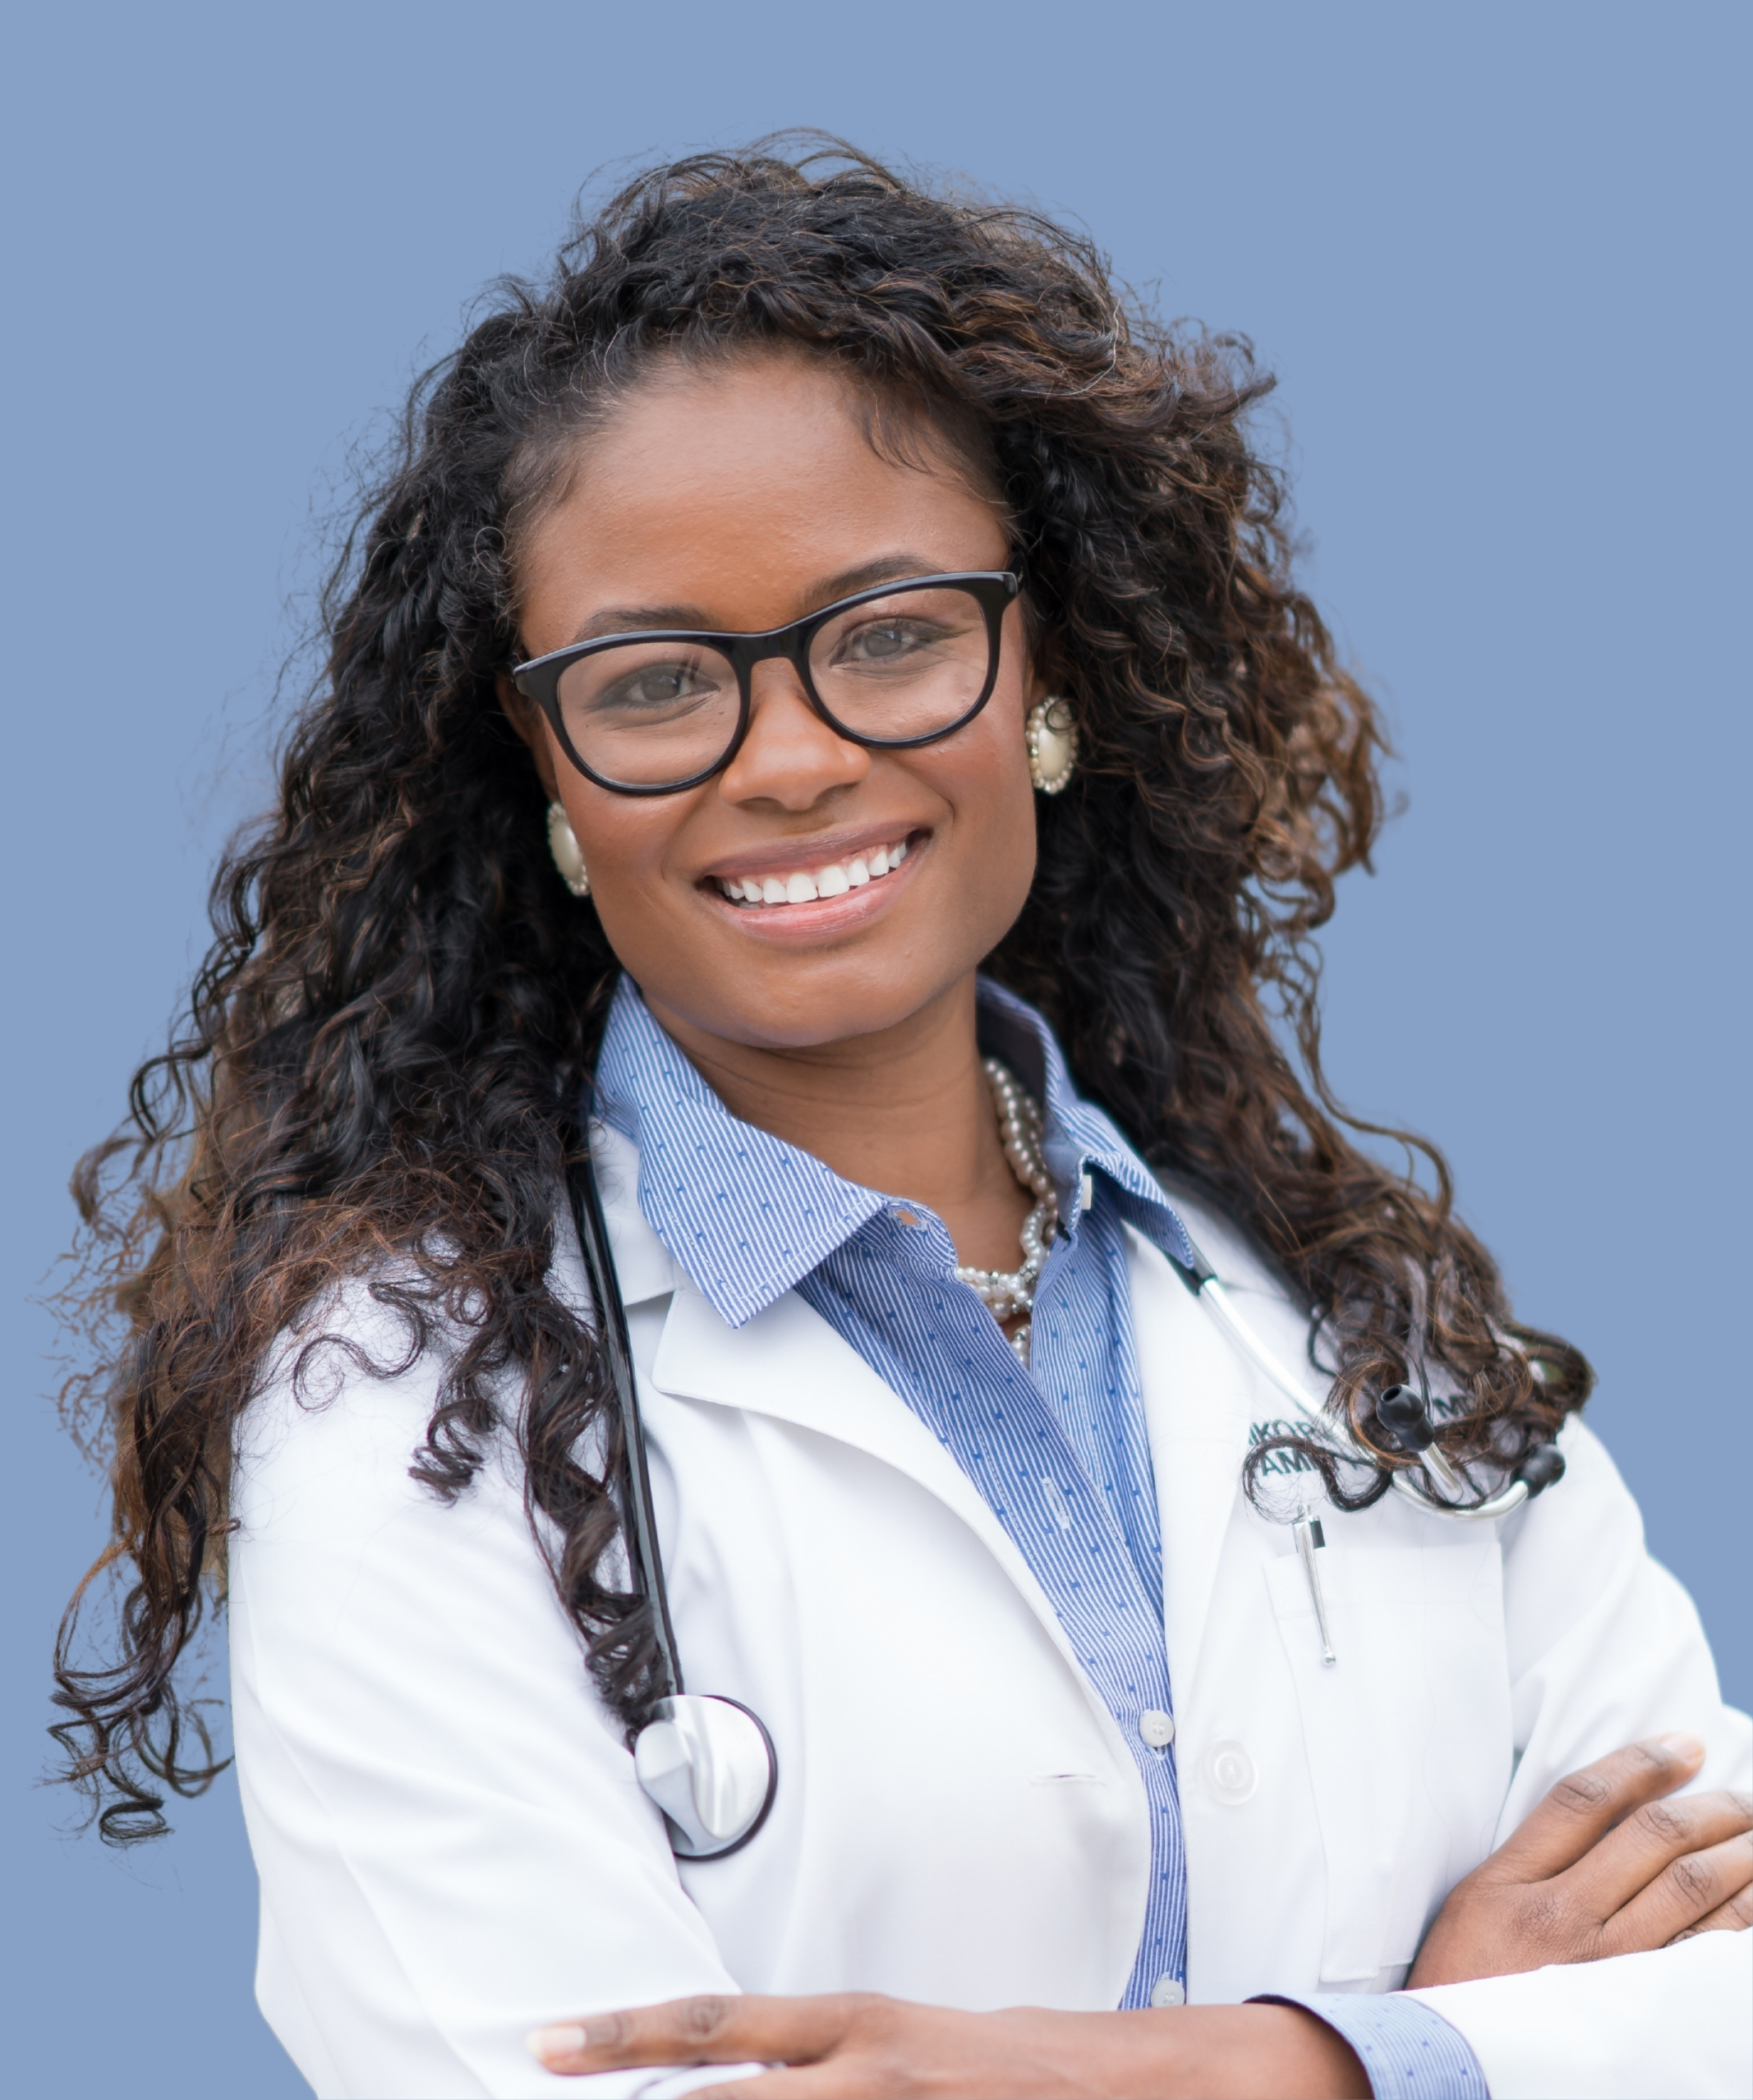 Dr. Miiko Rowley - Functional Medicine Doctor